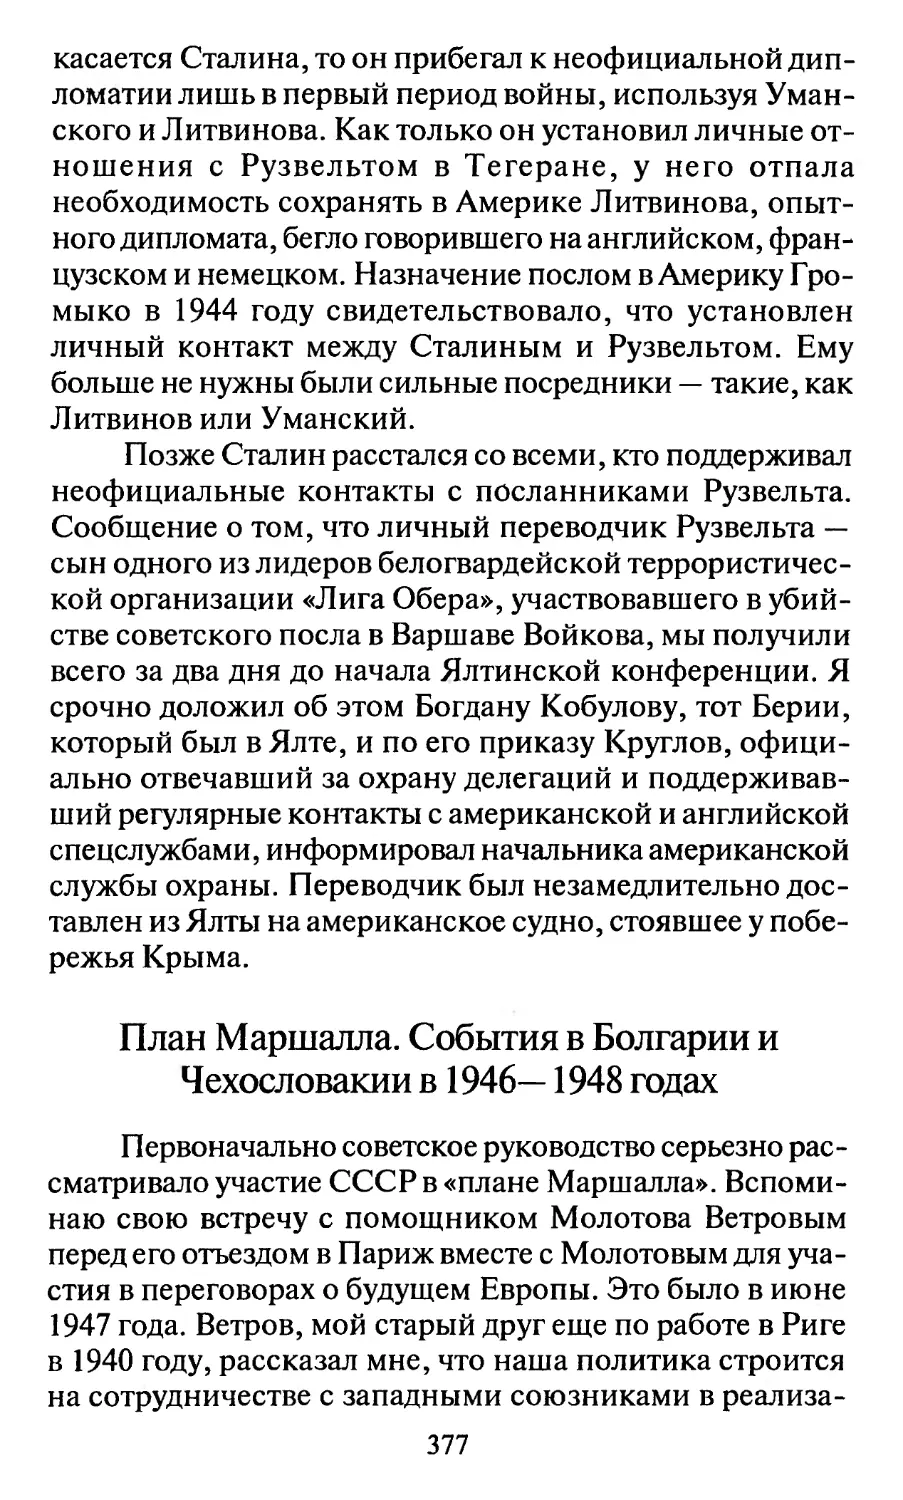 План Маршалла. События в Болгарии и Чехословакии в 1946-1948 годах